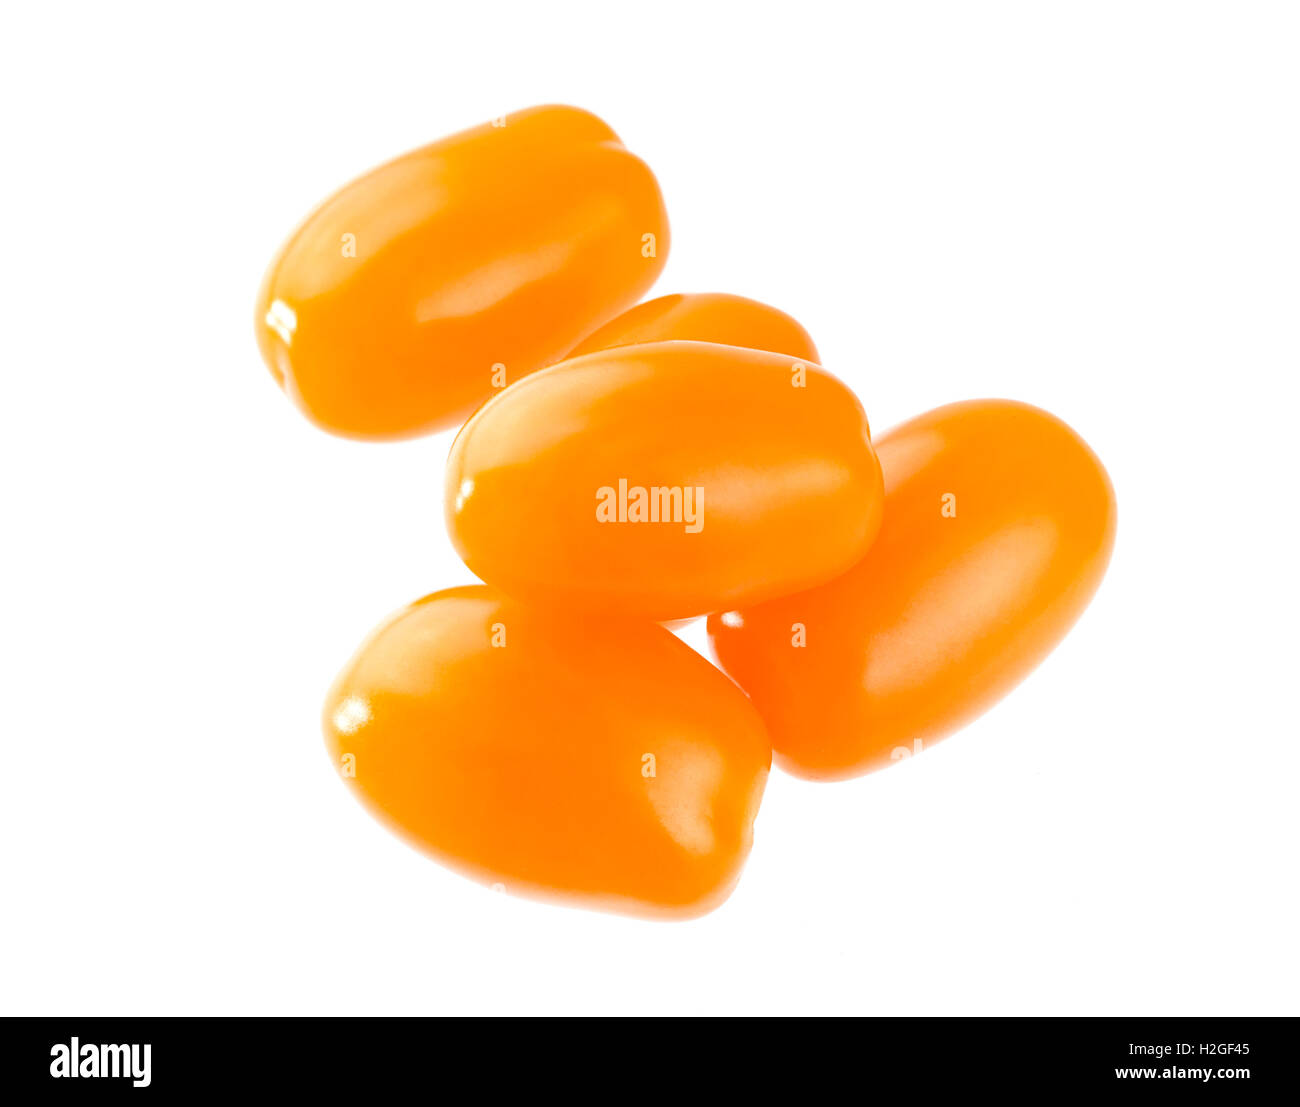 Orange cherry tomatoes isolated on white background Stock Photo